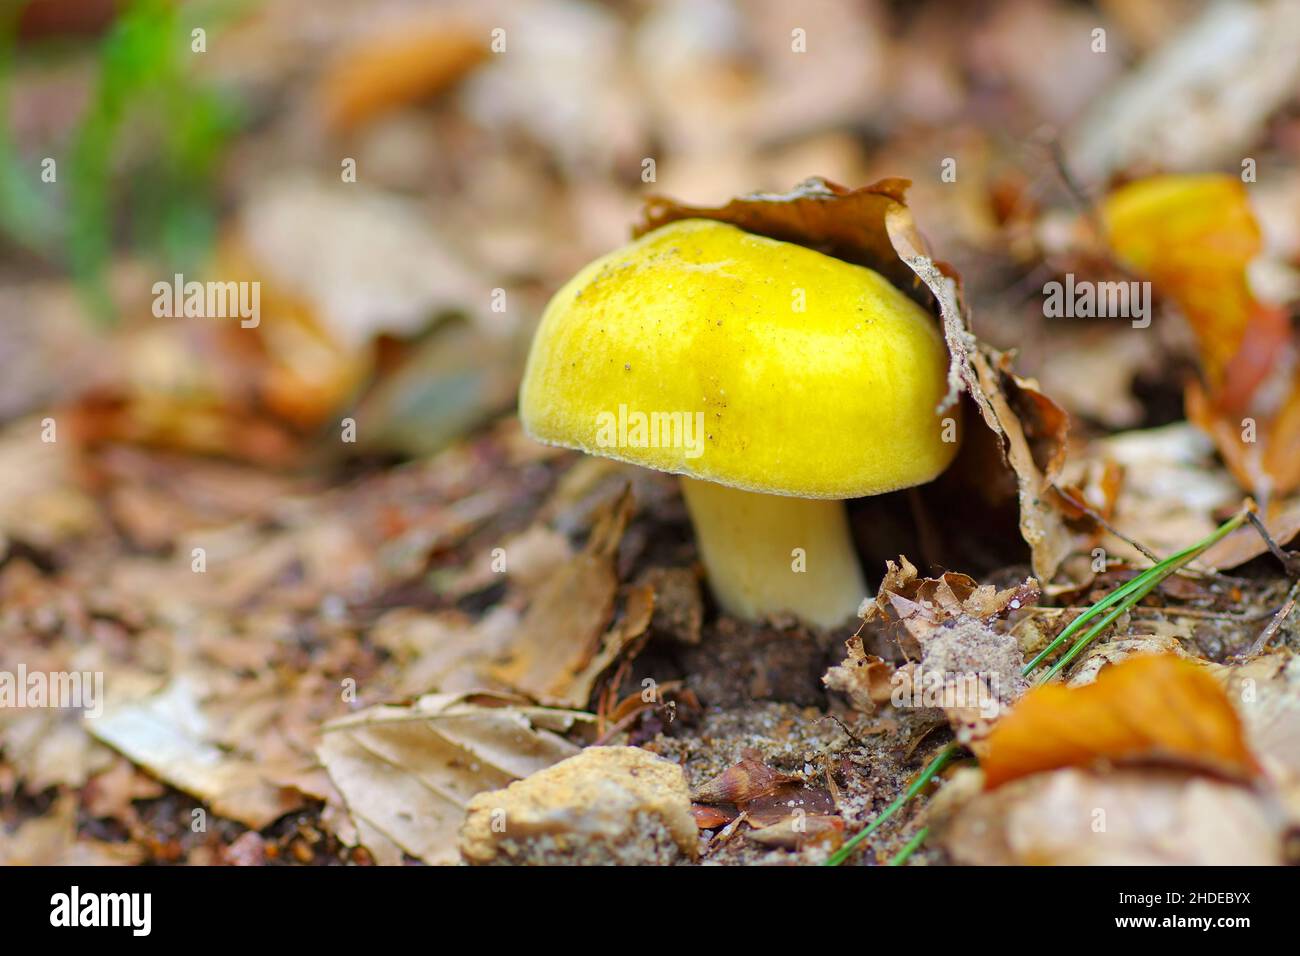 Palude gialla brittlegill, Russula claroflava nella foresta autunnale Foto Stock